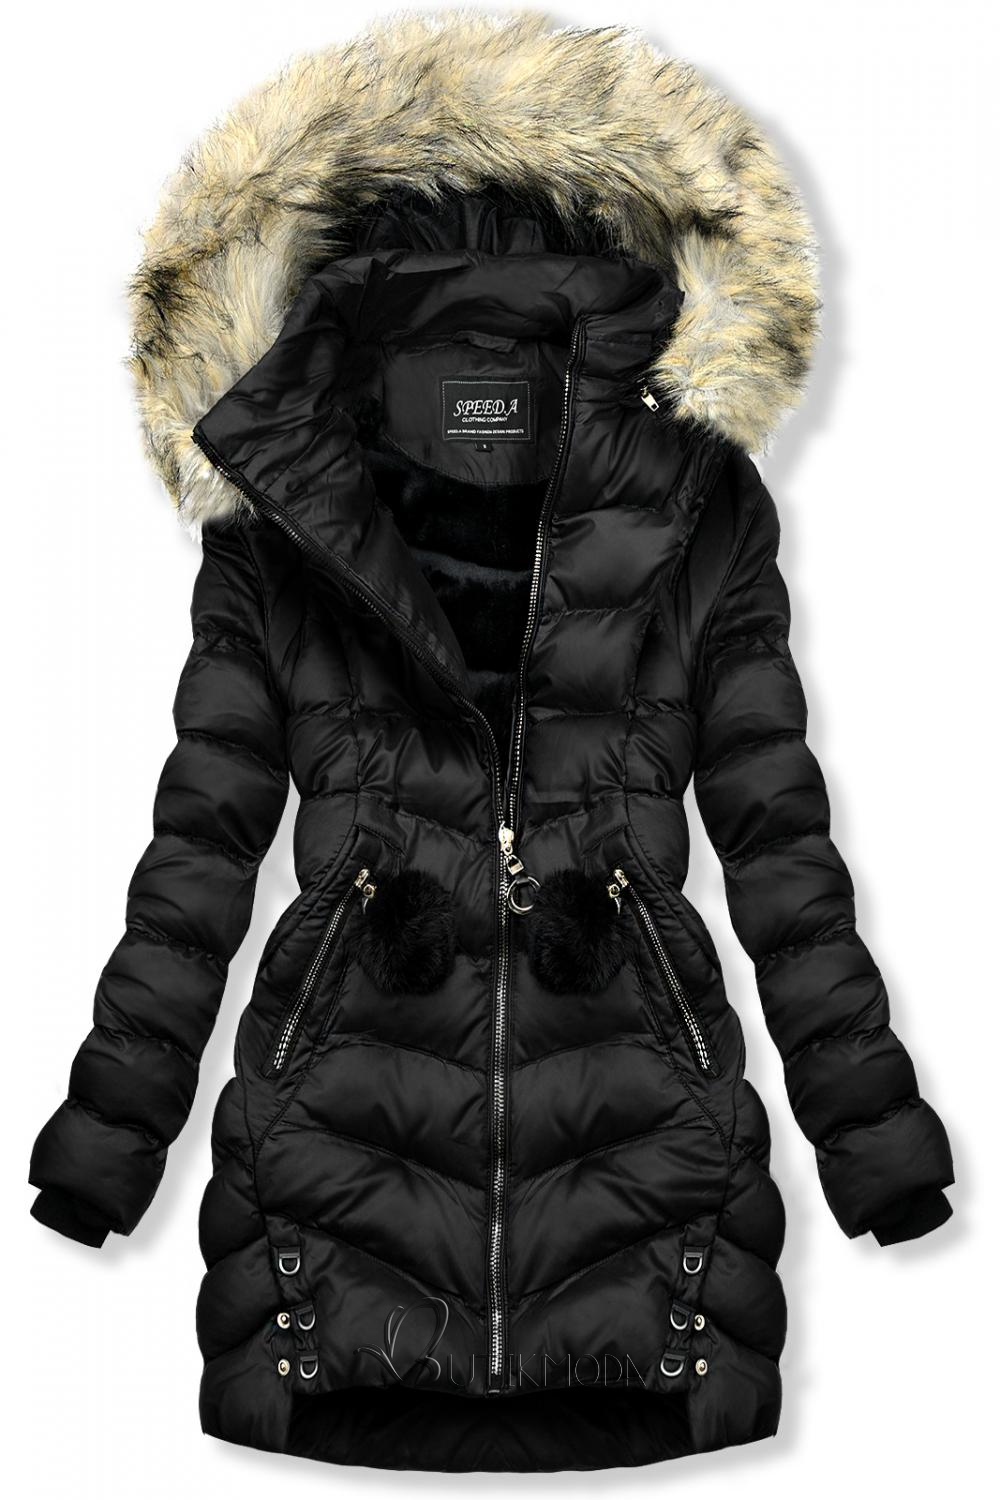 Fekete színű téli kabát/mellény